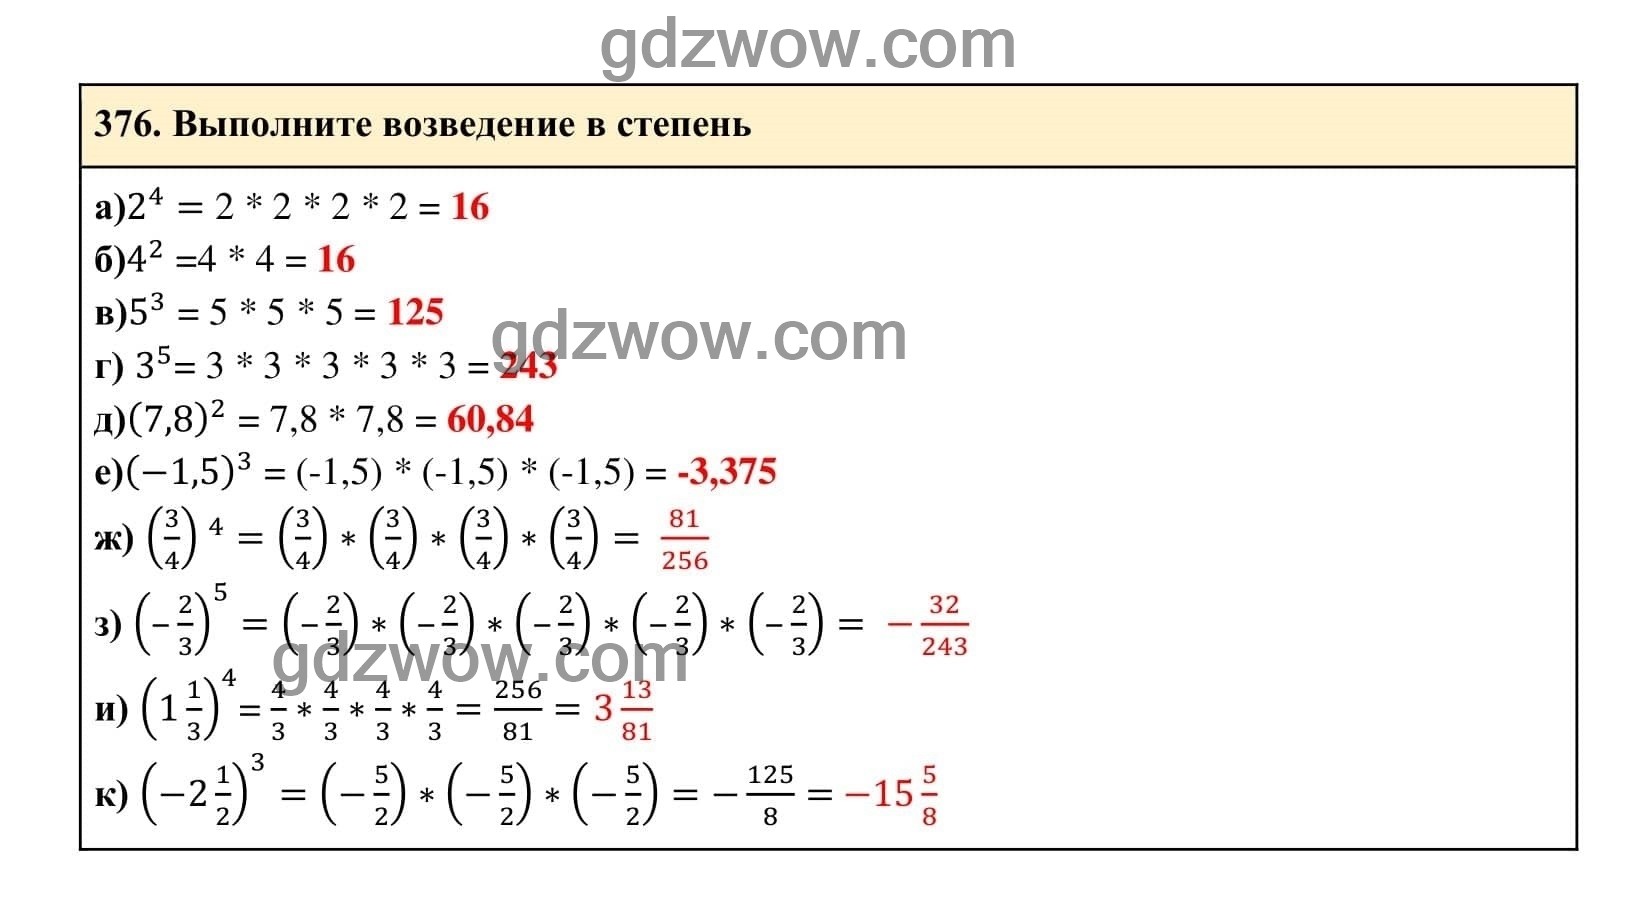 Упражнение 376 - ГДЗ по Алгебре 7 класс Учебник Макарычев (решебник) - GDZwow